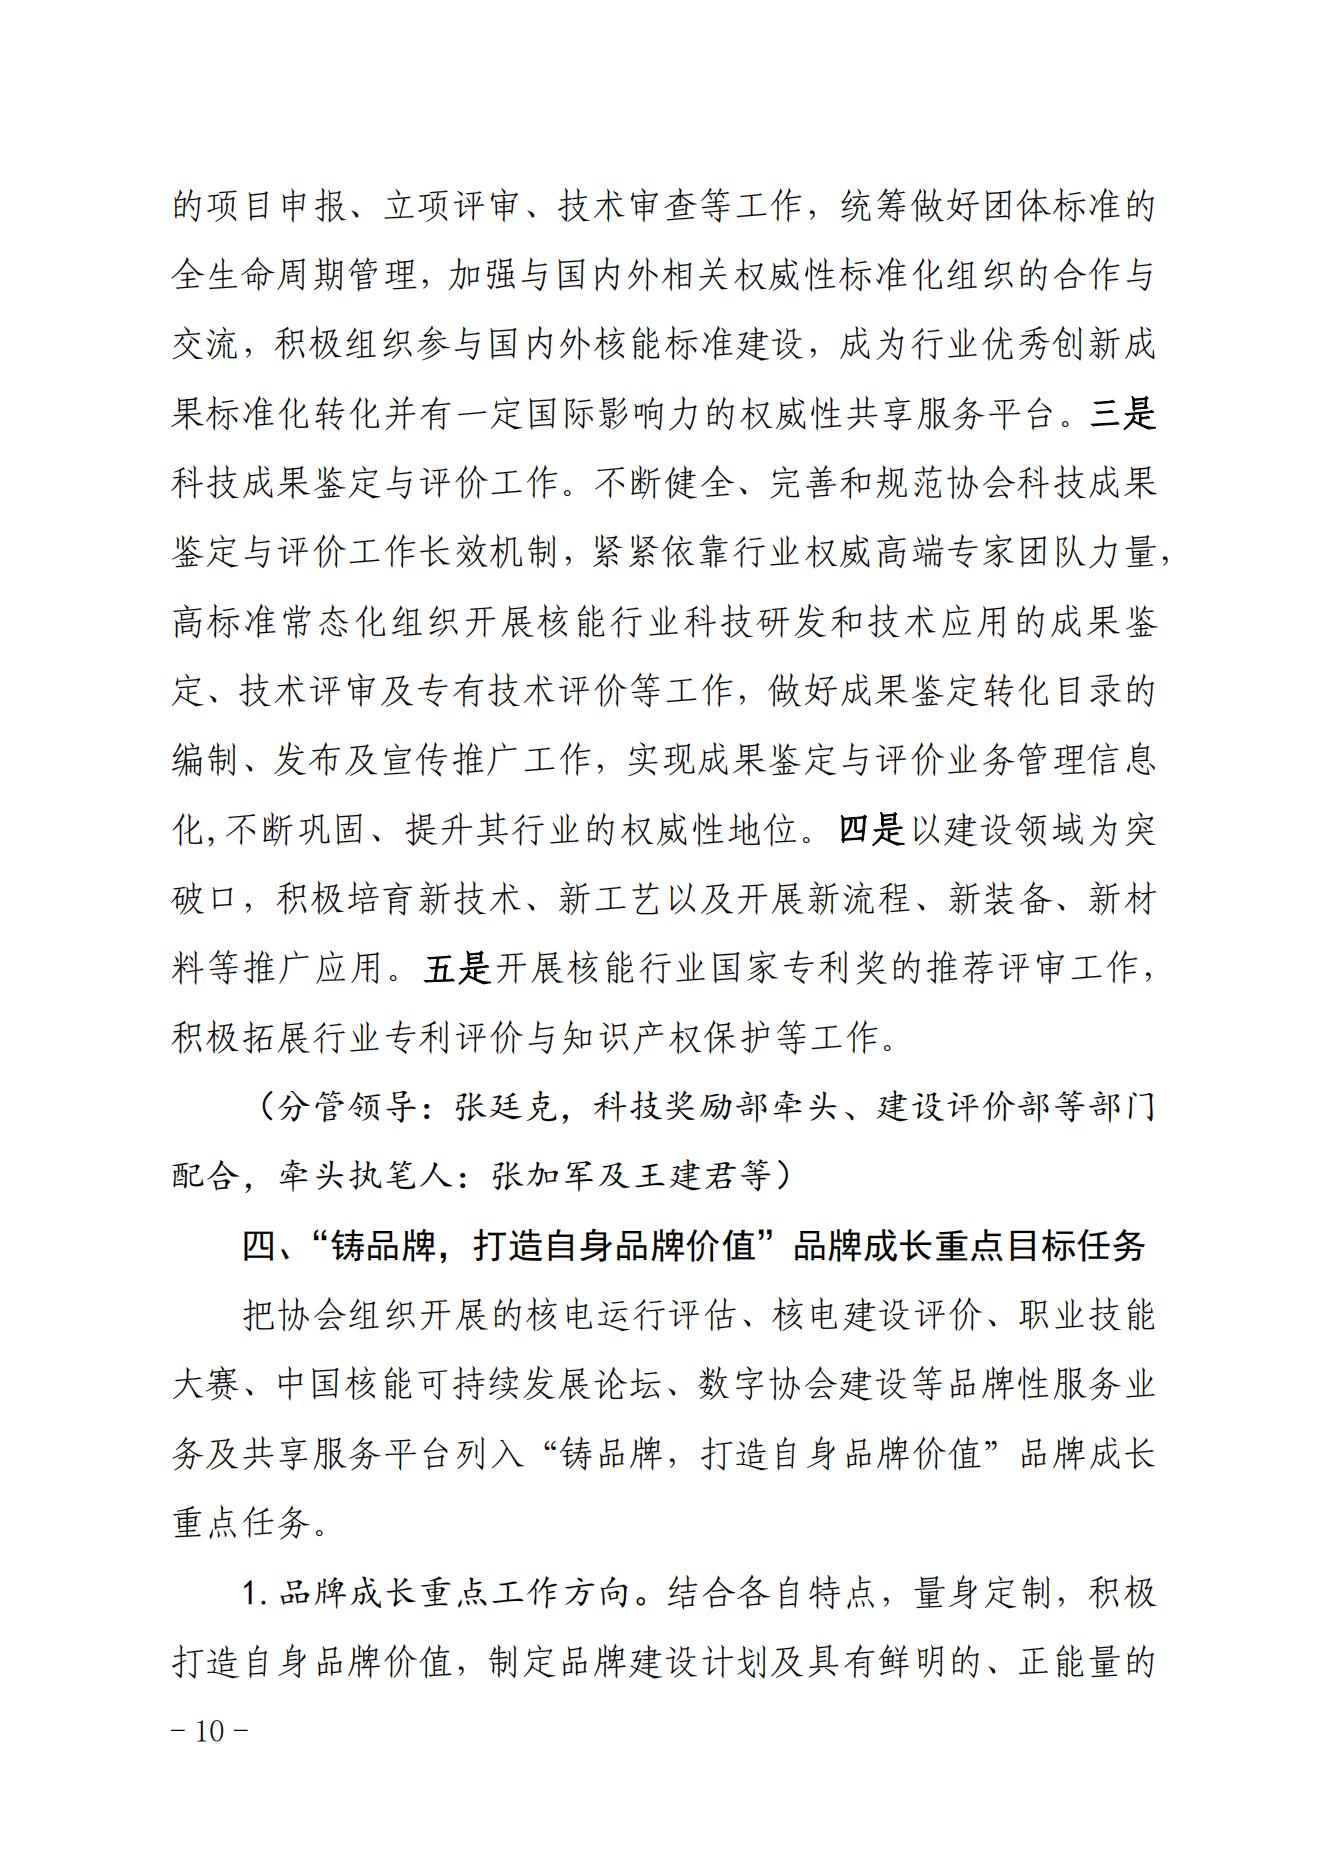 关于印发《中国核能行业协会“品牌协会成长计划”实施方案》的通知_09.jpg